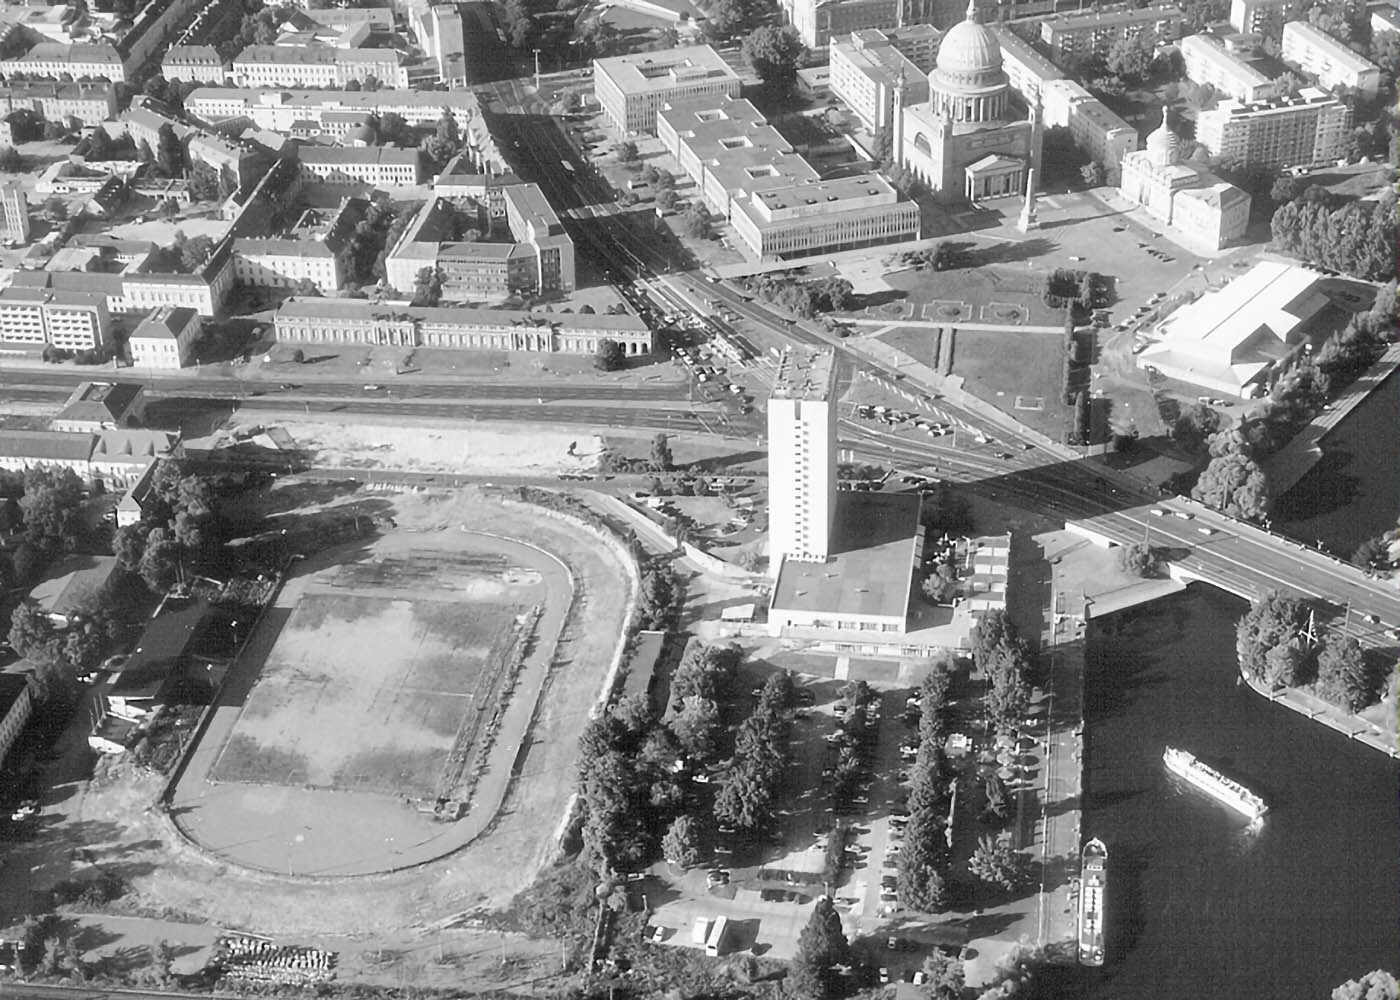 Foto: Historisches Luftbild des Lustgartens mit Nutzung als Stadion. Im Bereich des ehemaligen Neptunbassins findet sich ein großer Parkplatz.